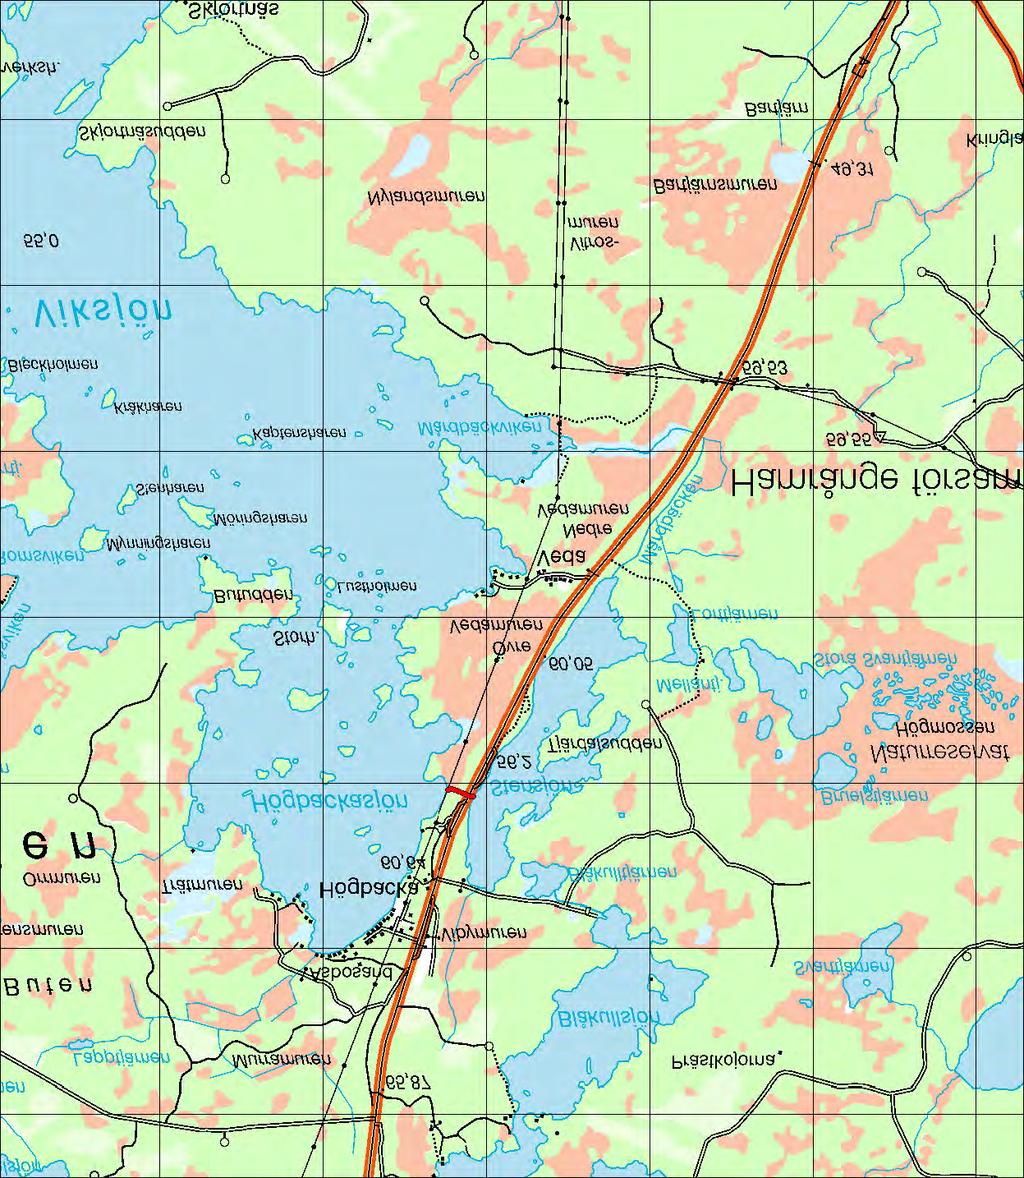 7.12 Avrinningsområde: 50000 Stensjö kanal 7.12 Stensjö kanal Koord: X: 676605 / Y: 156377 Karta över Stensjö kanal (1 ruta = 1 km 2 ).